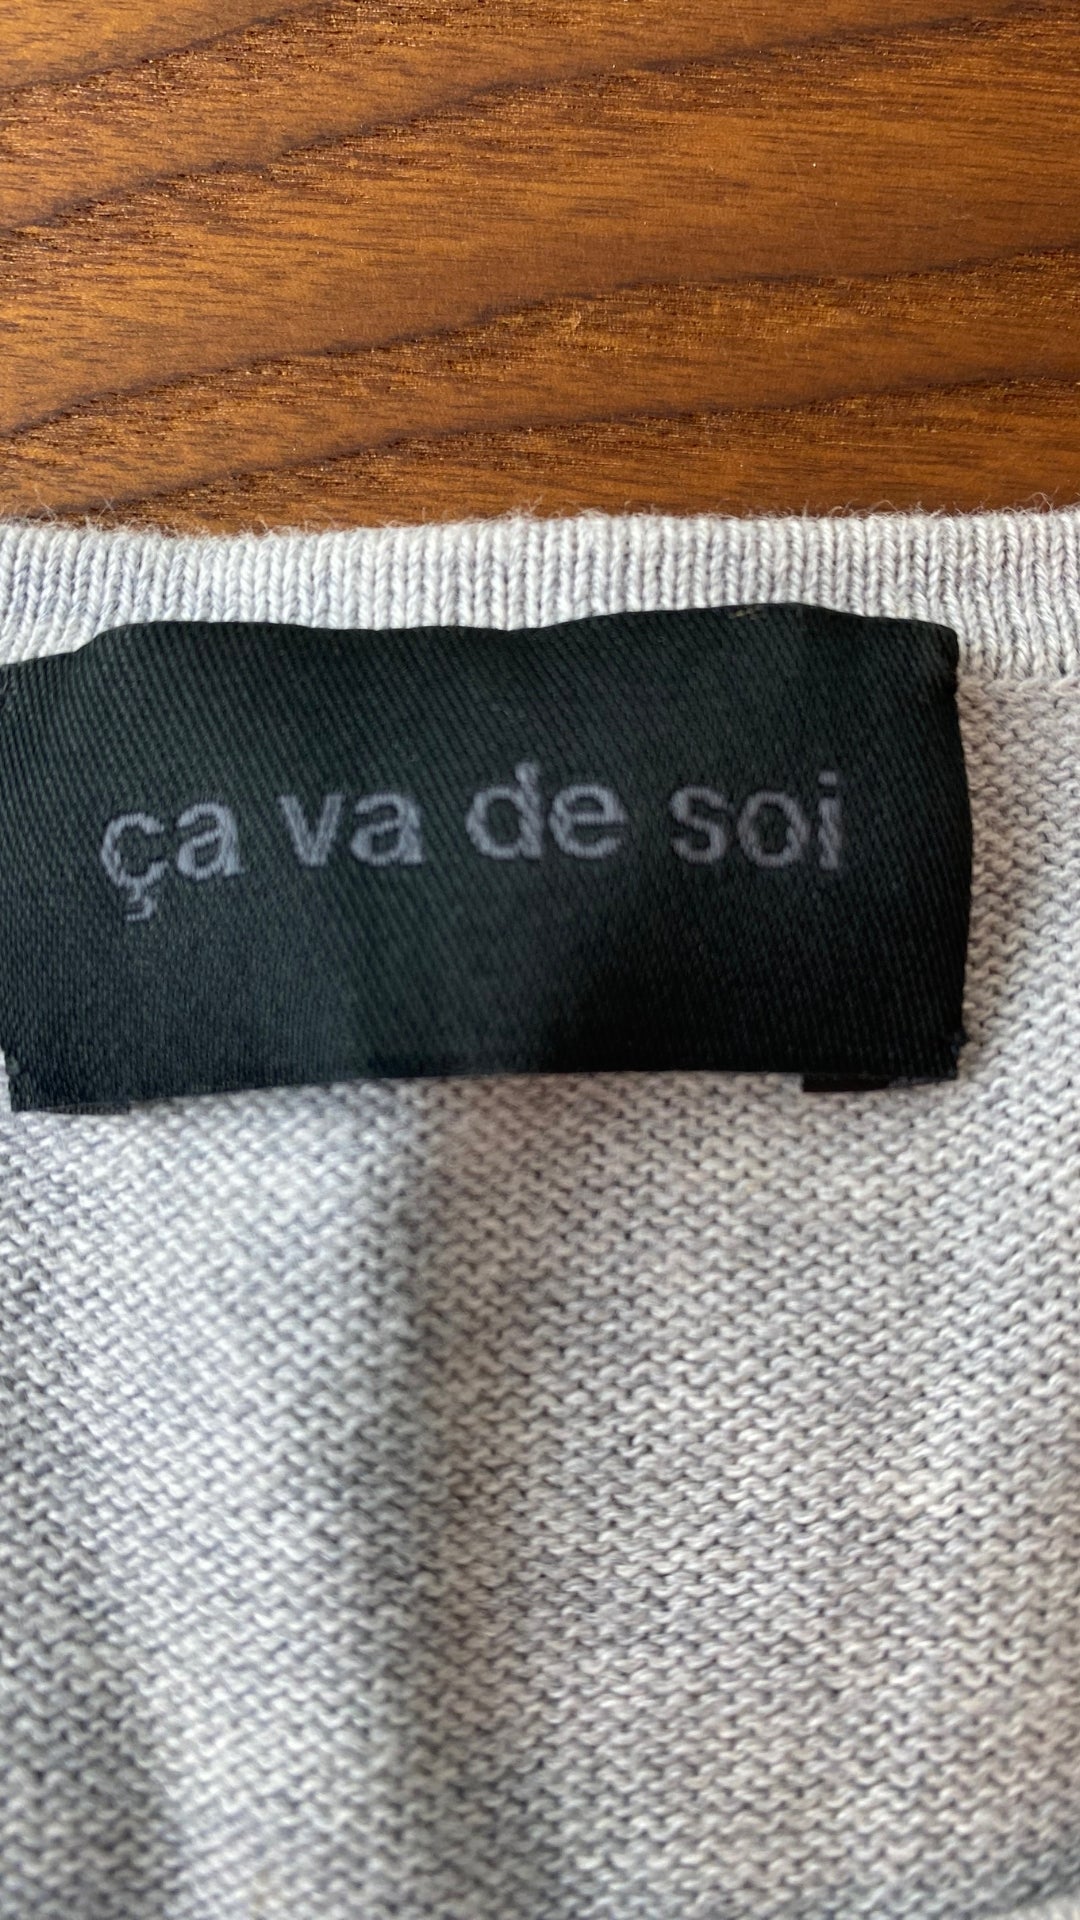 Chandail long tricot gris coton égyptien Ça va de soi, taille medium. Vue de l'étiquette de marque.